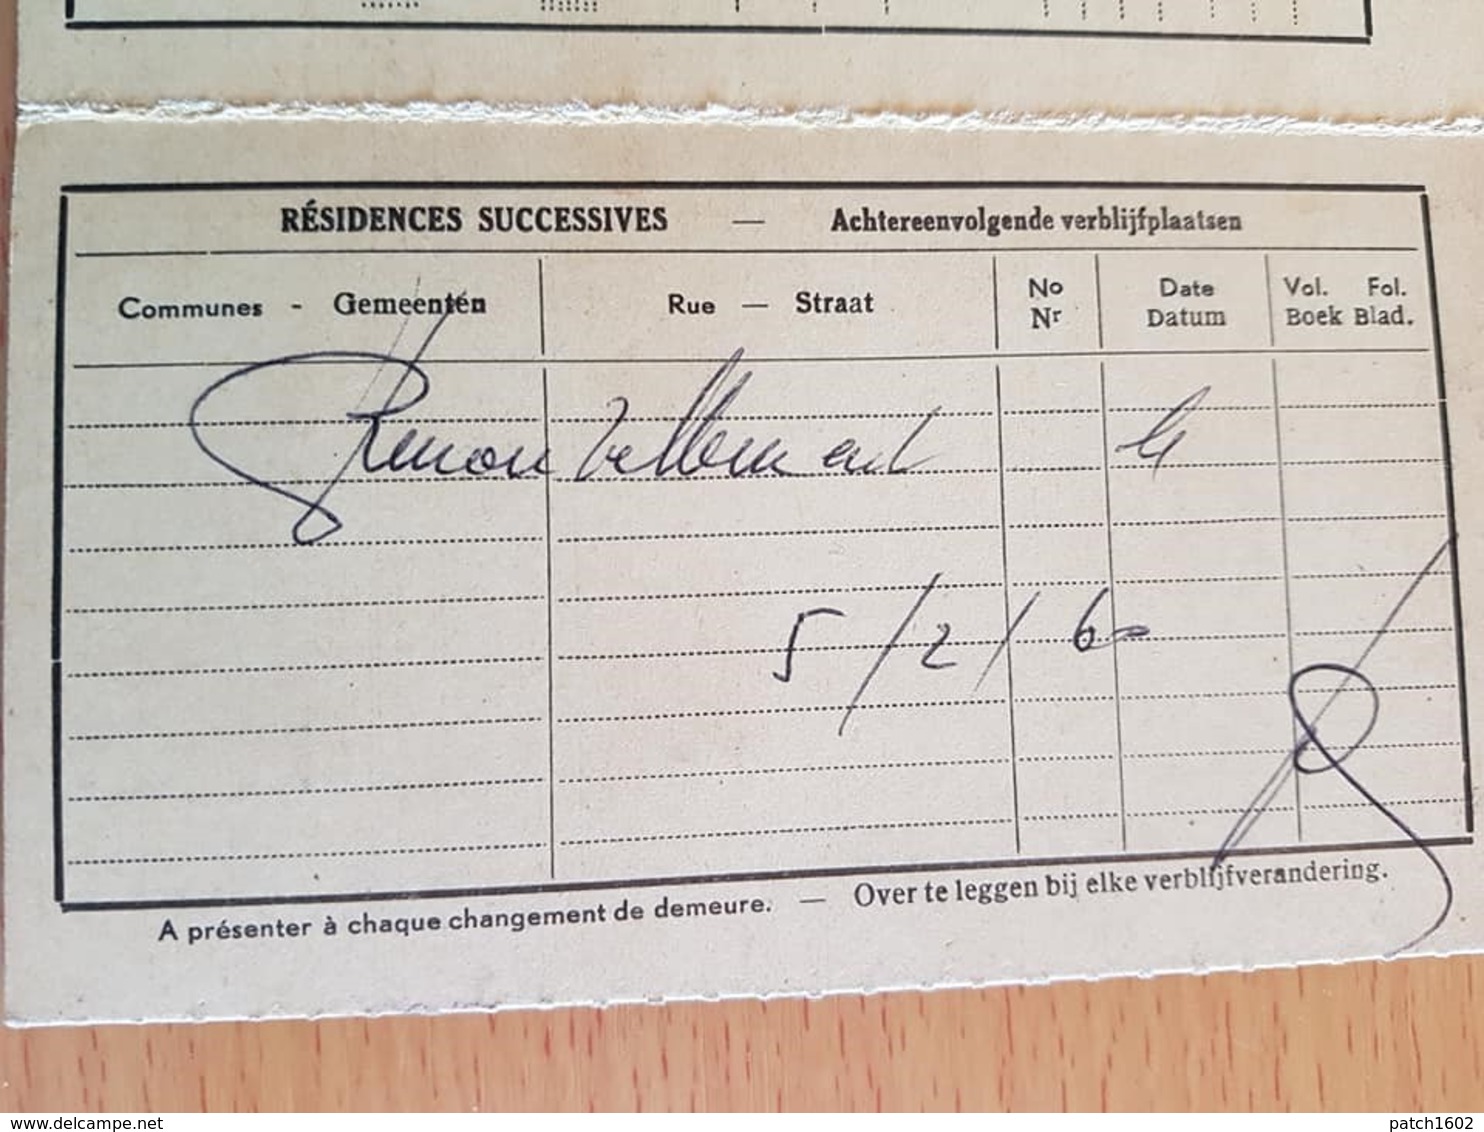 1958 Délivré A MONS Carte D'identité étranger Valable 2 Ans à HOSCHE Ernestine Félicité Française Né Le 02/01/1891 - Non Classés